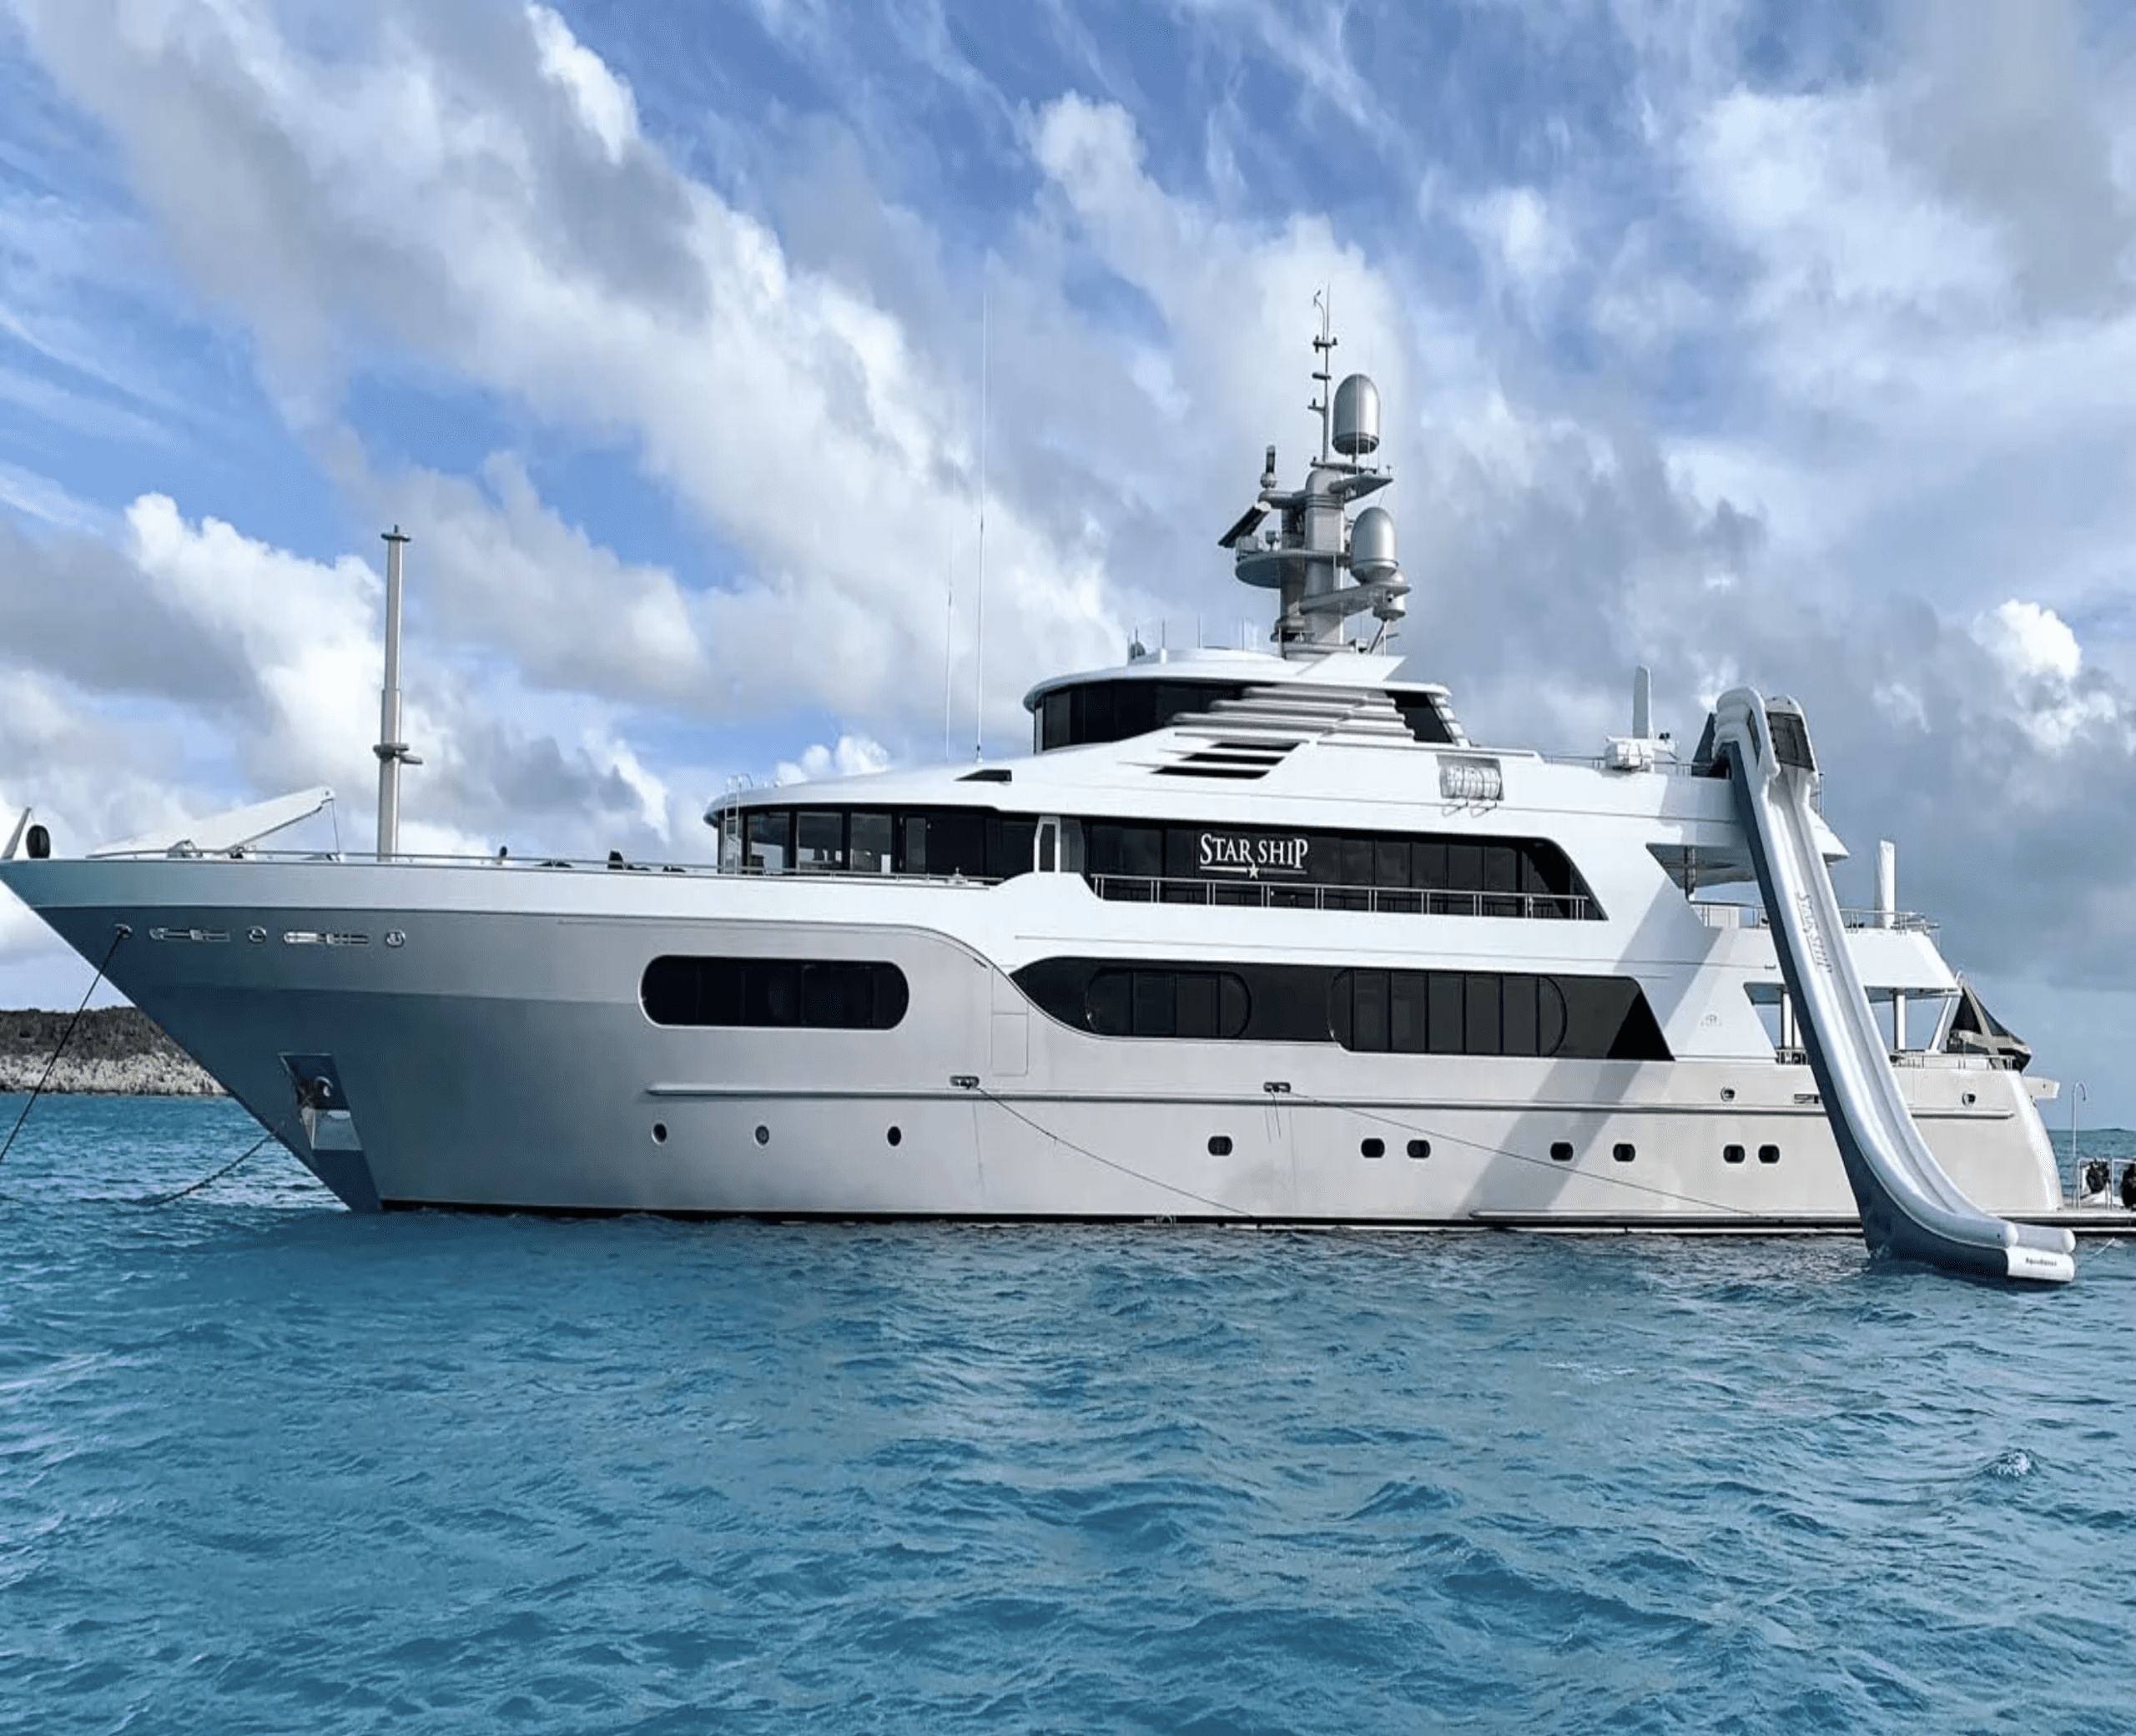 below deck cost of yacht